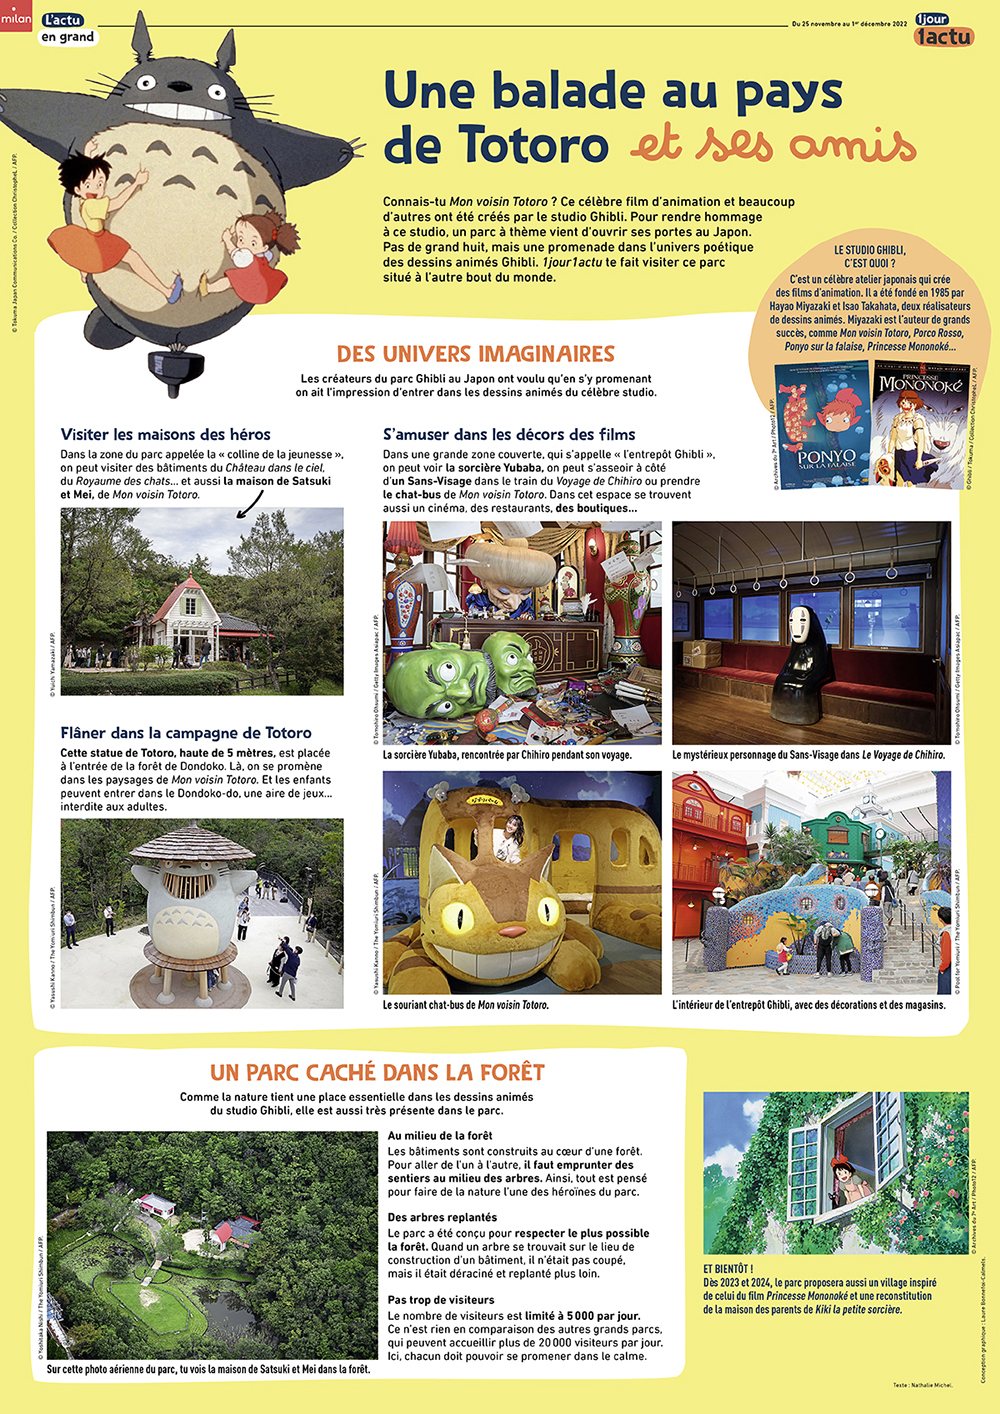 Studio Ghibli France on X: Concours pour fêter la sortie cette